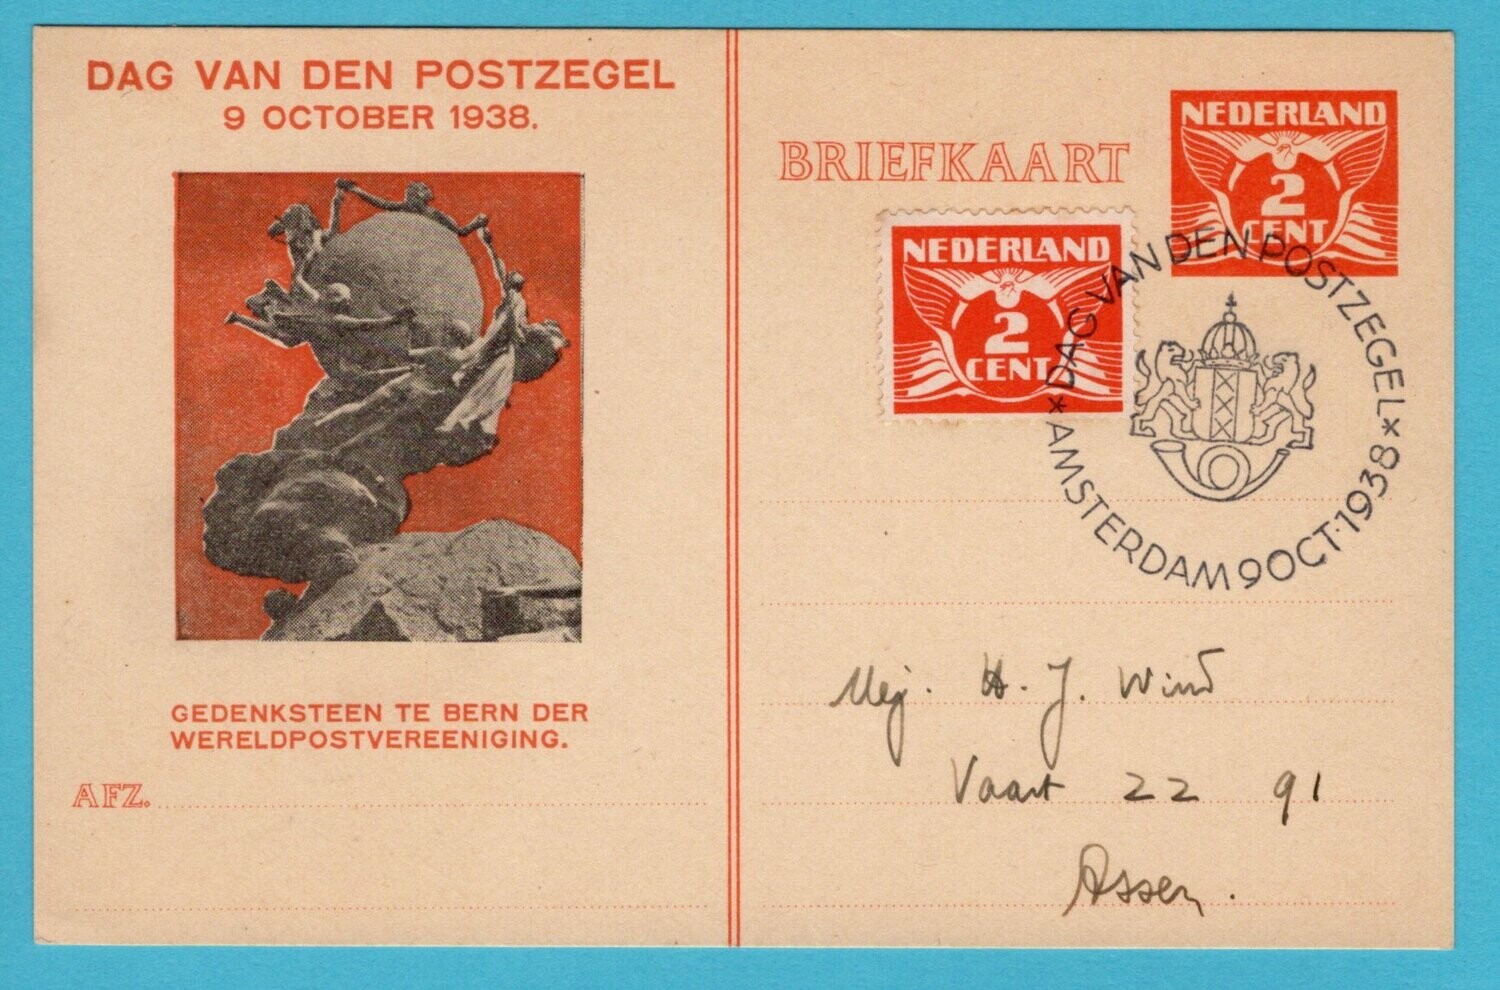 NEDERLAND briefkaart 1938 Dag van de Postzegel met UPU symbool